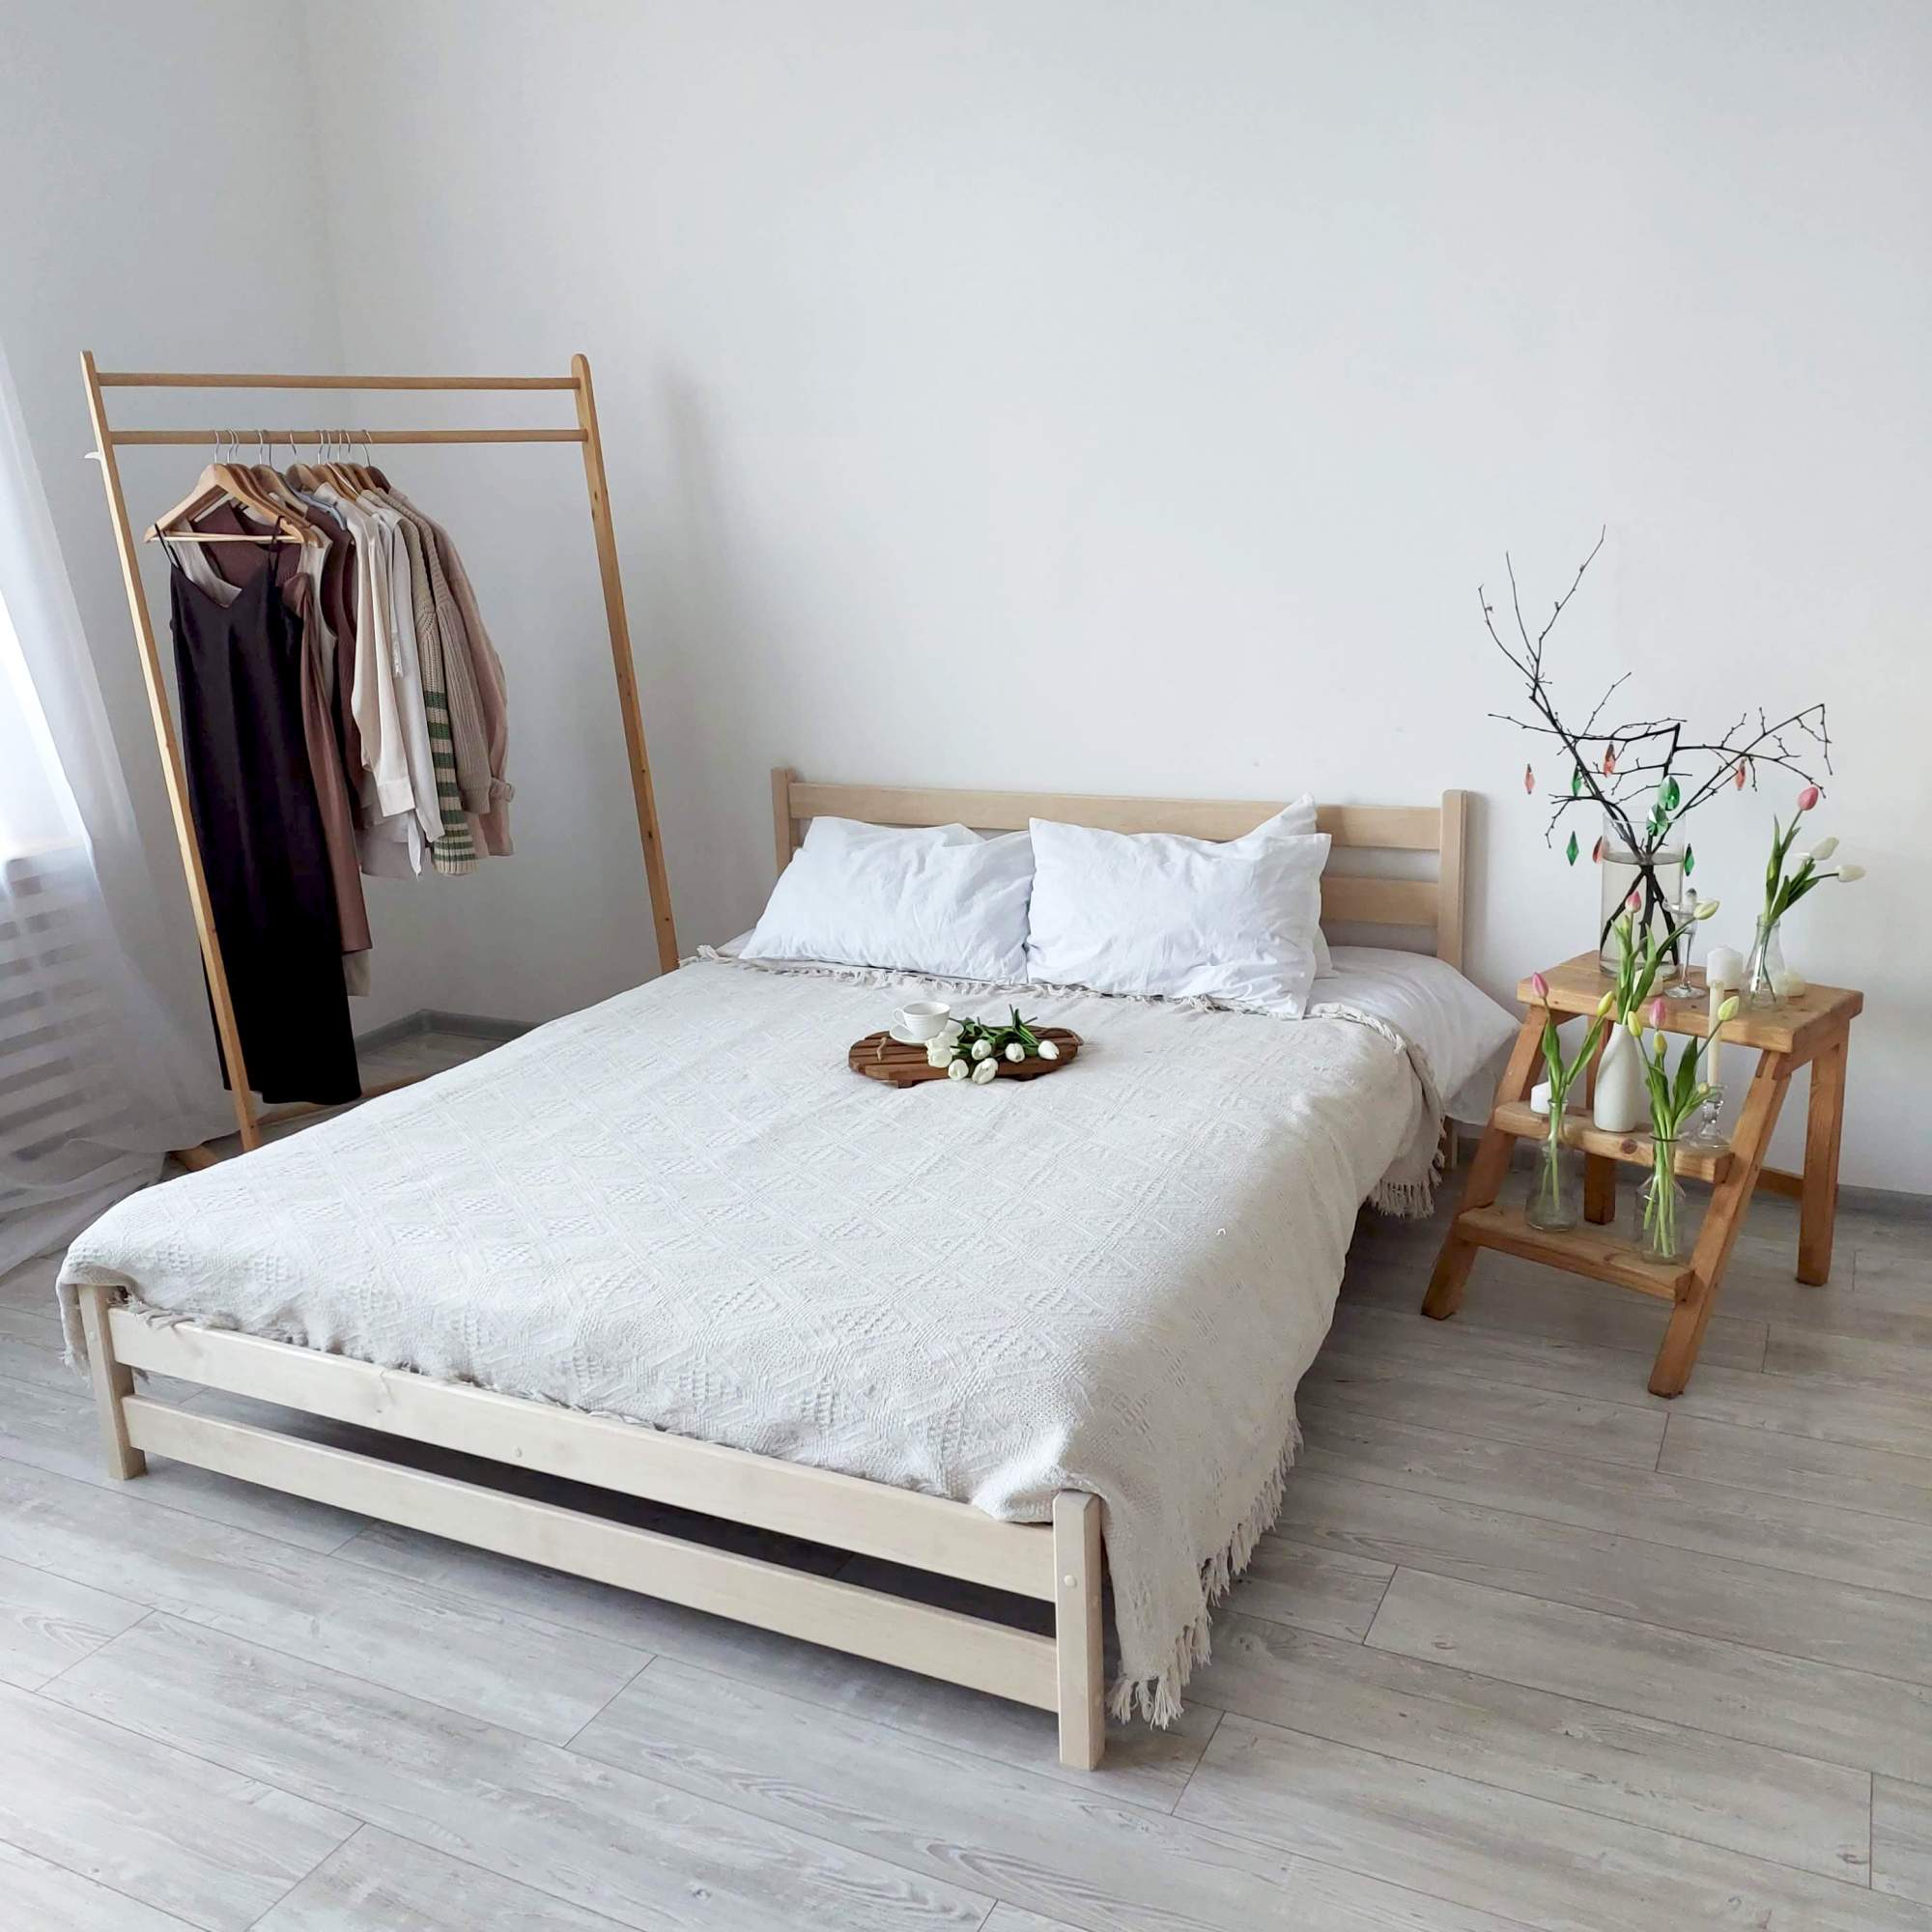 Кровать двуспальная Mi-Gusta Elias, 200х140 см, из массива берёзы, без покраски